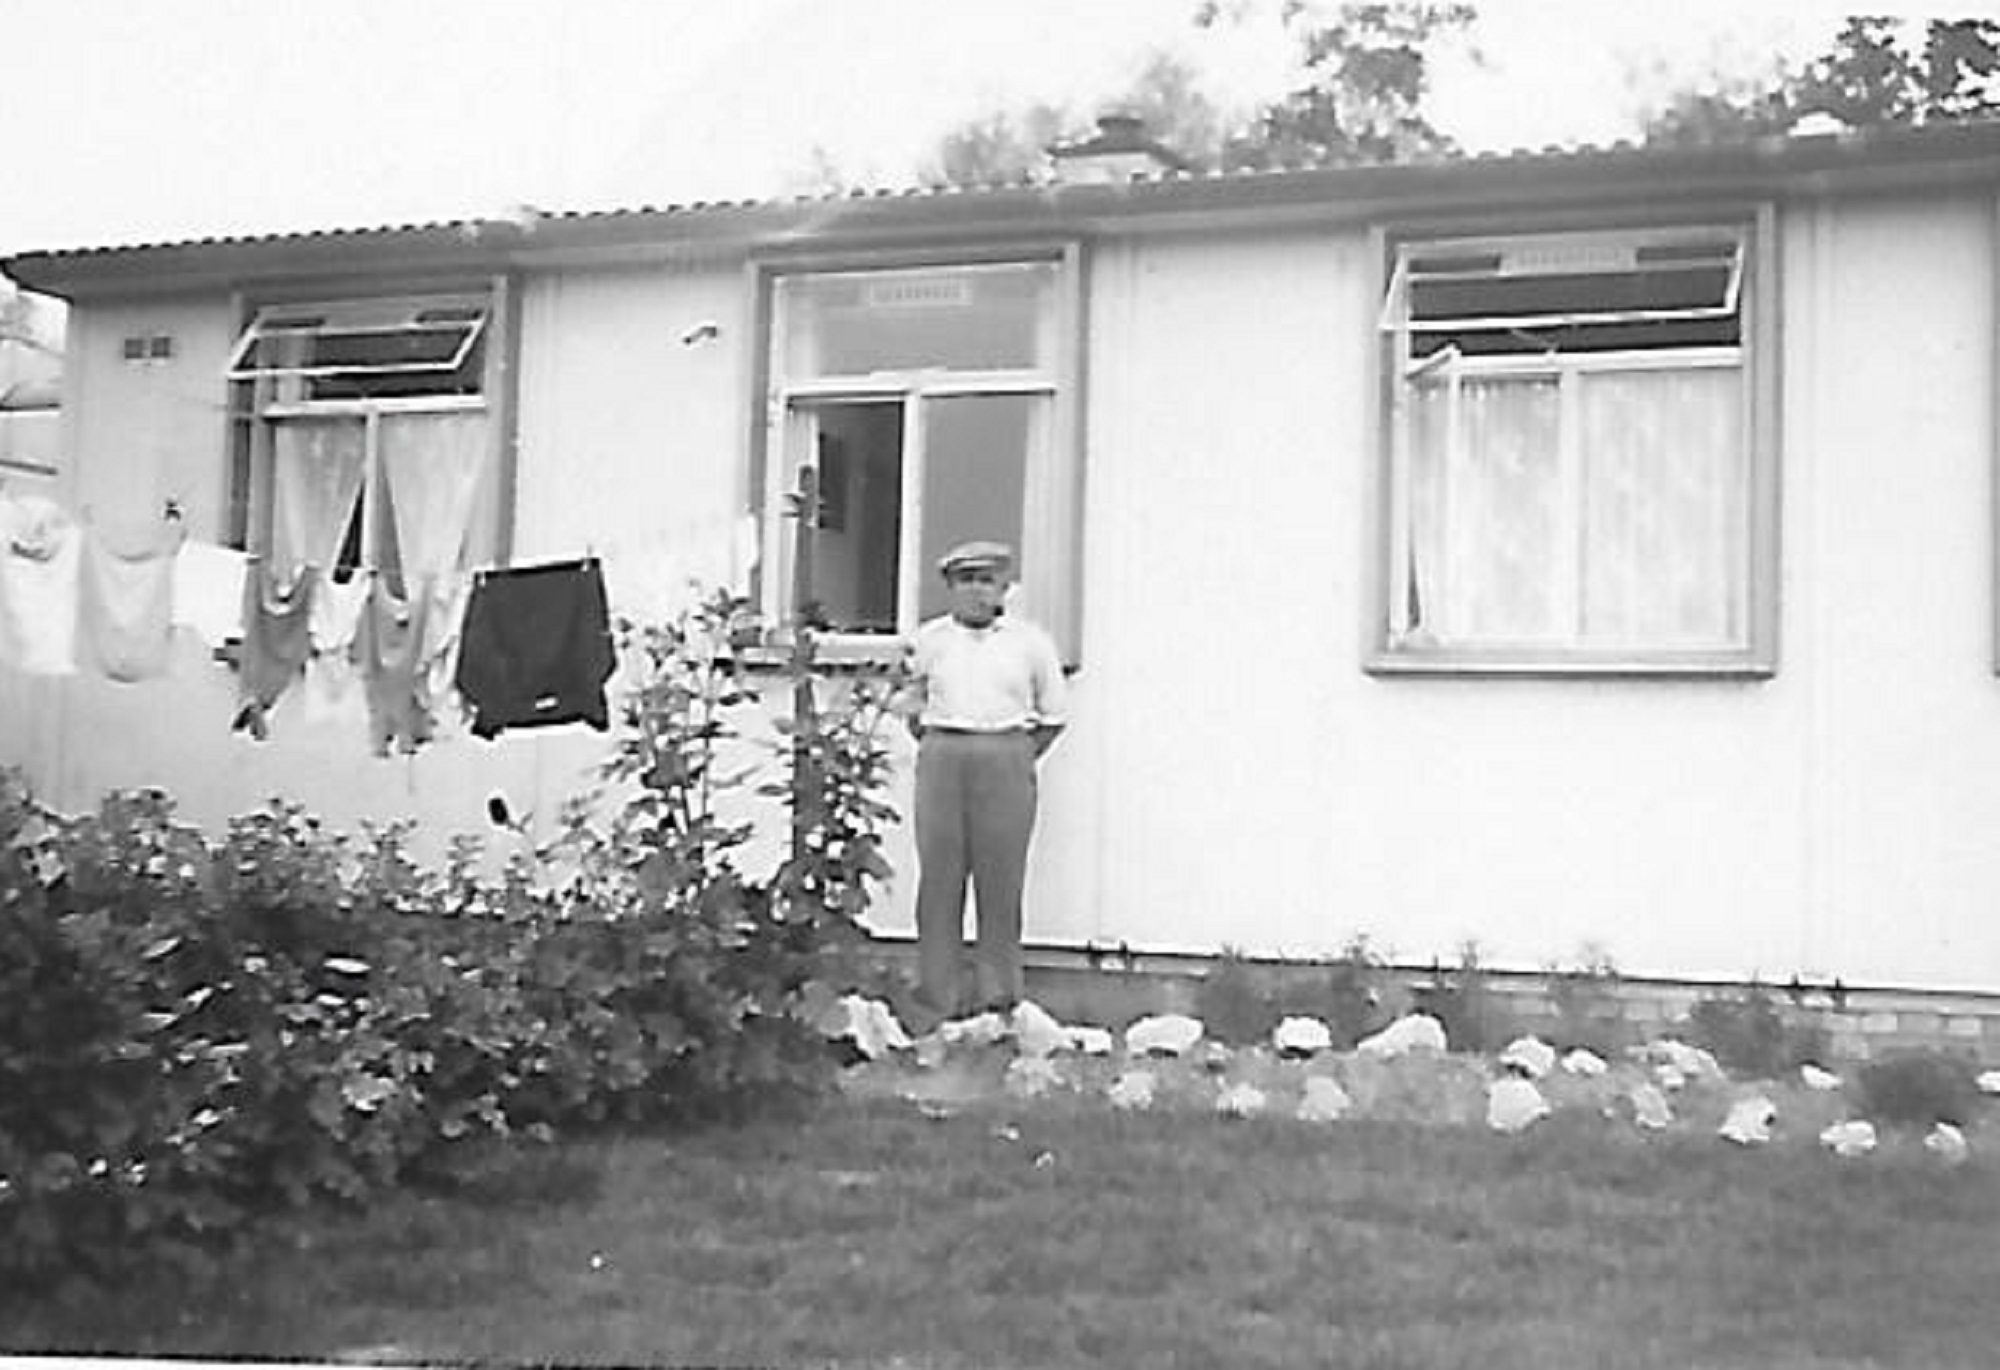 Granddad Eardley in our back garden in late 1940s. The Radleys, Sheldon